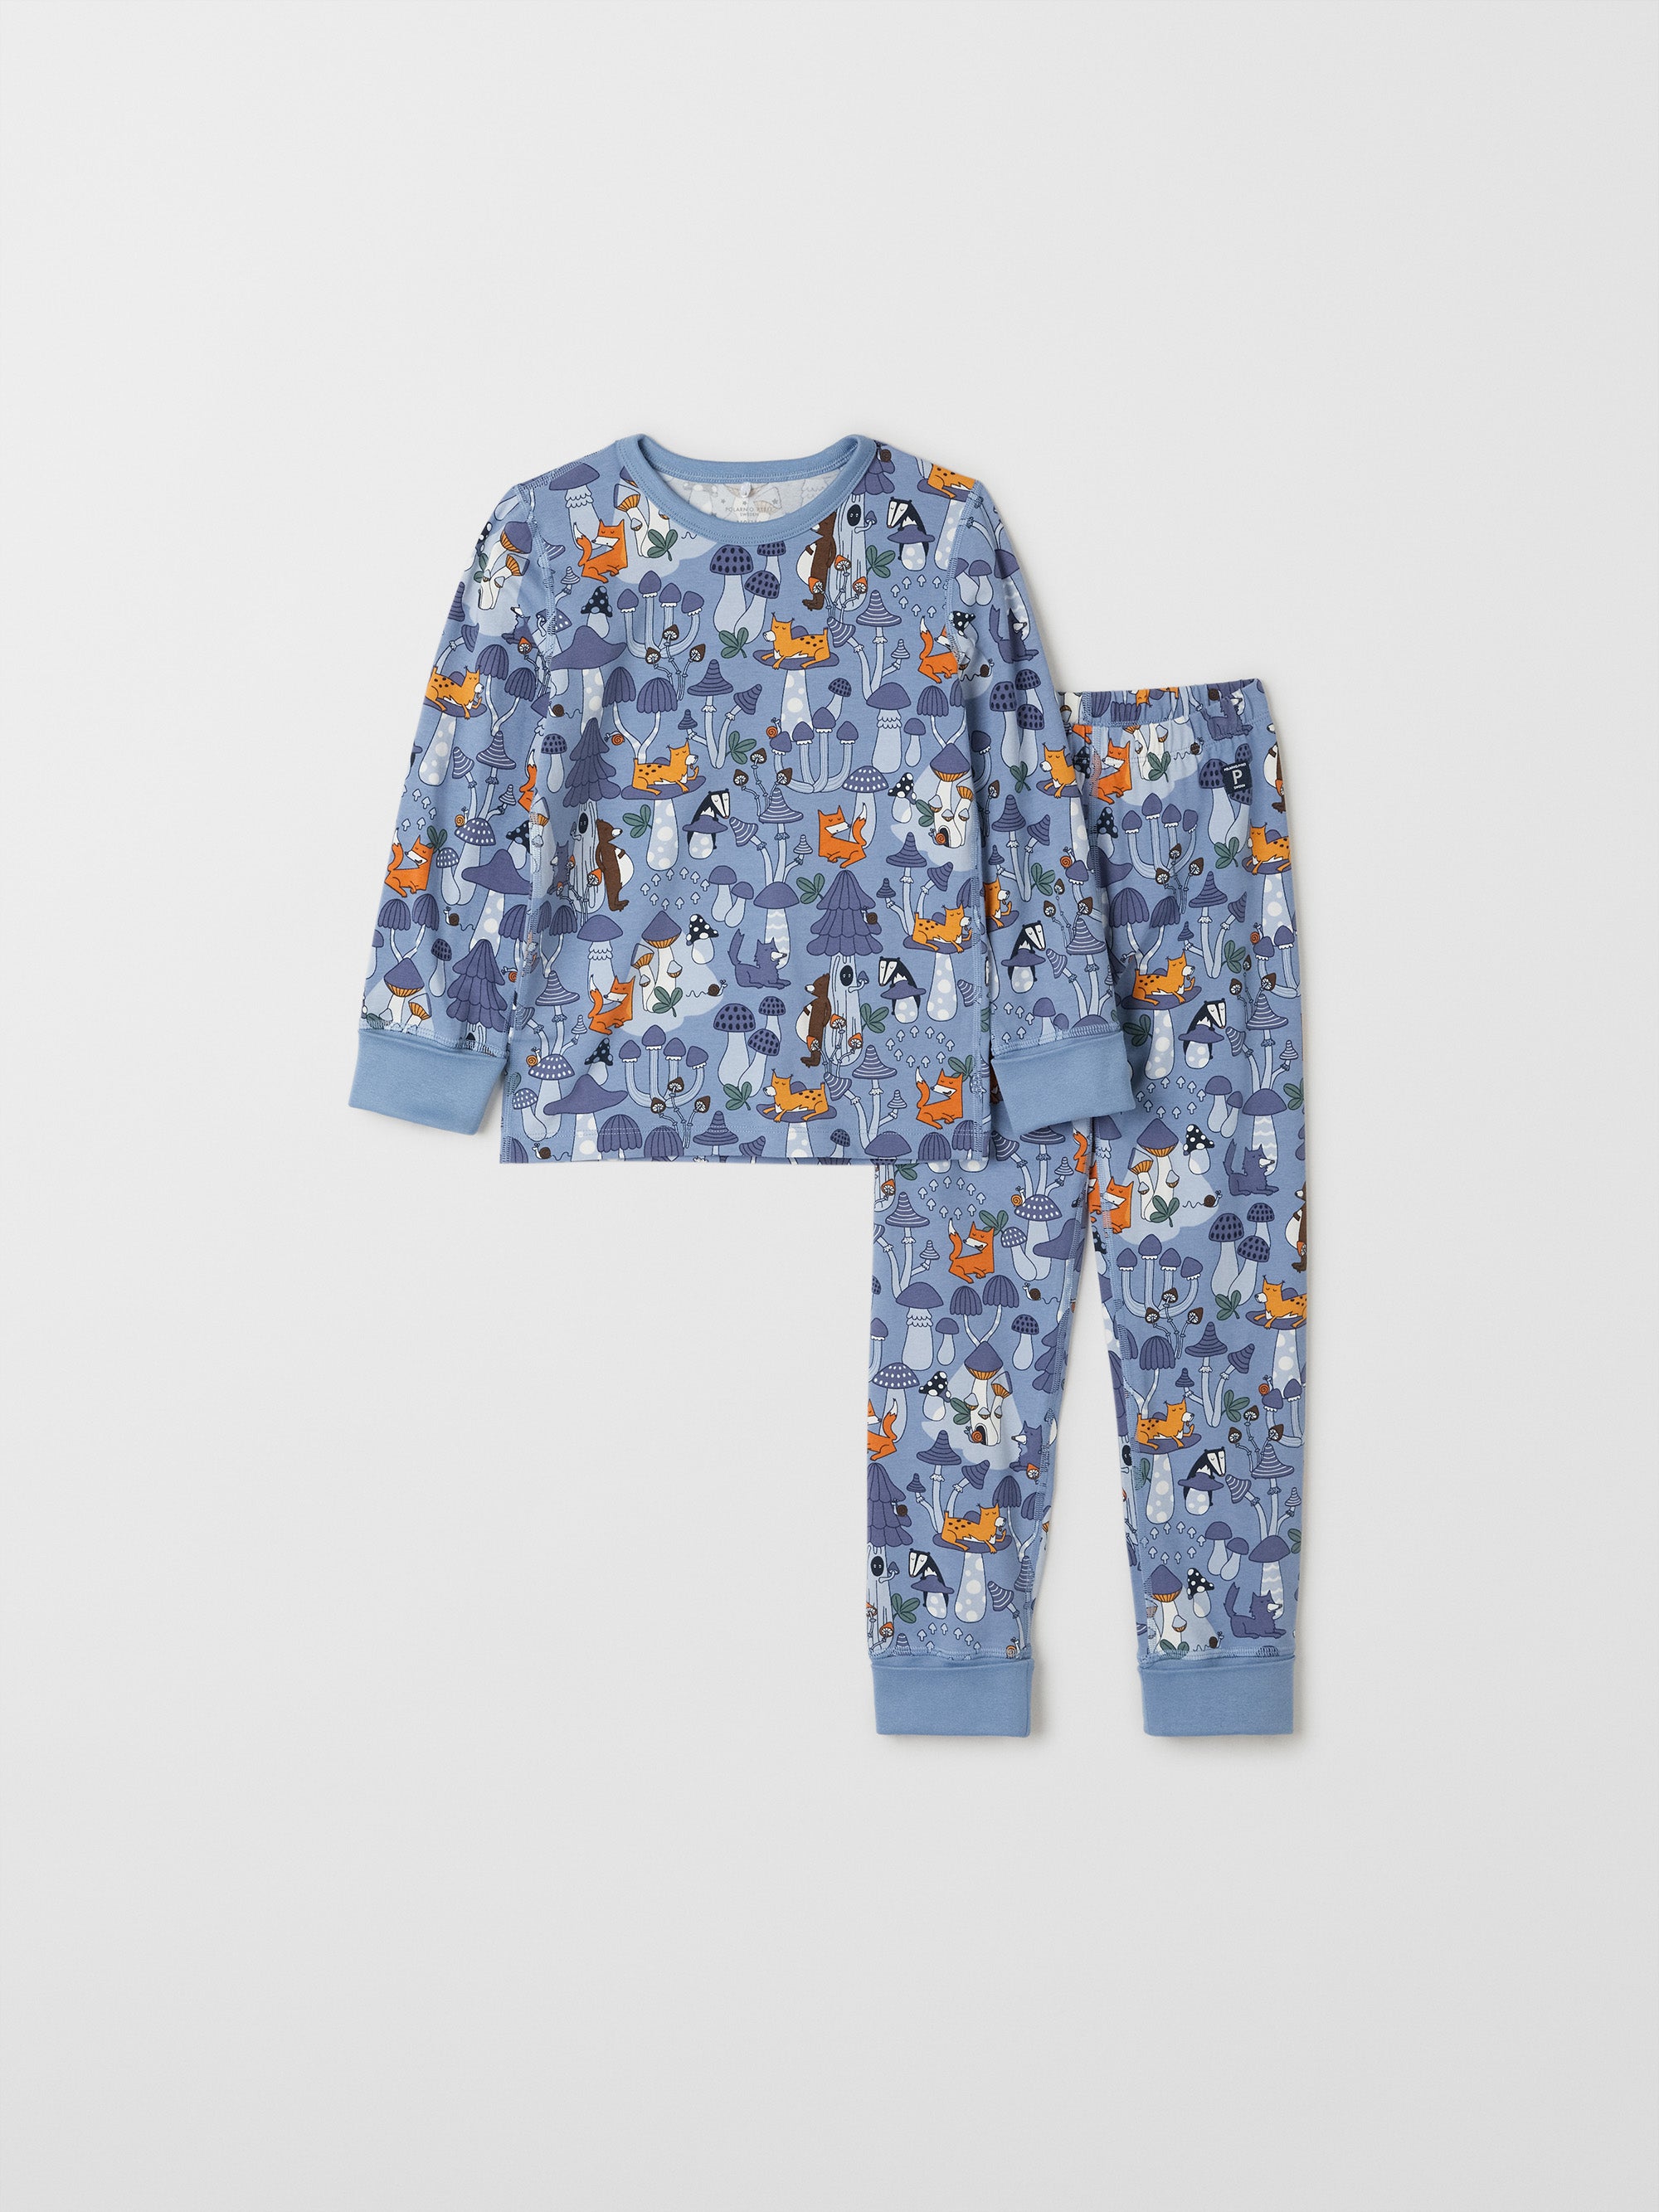 Forest Print Kids Pyjamas